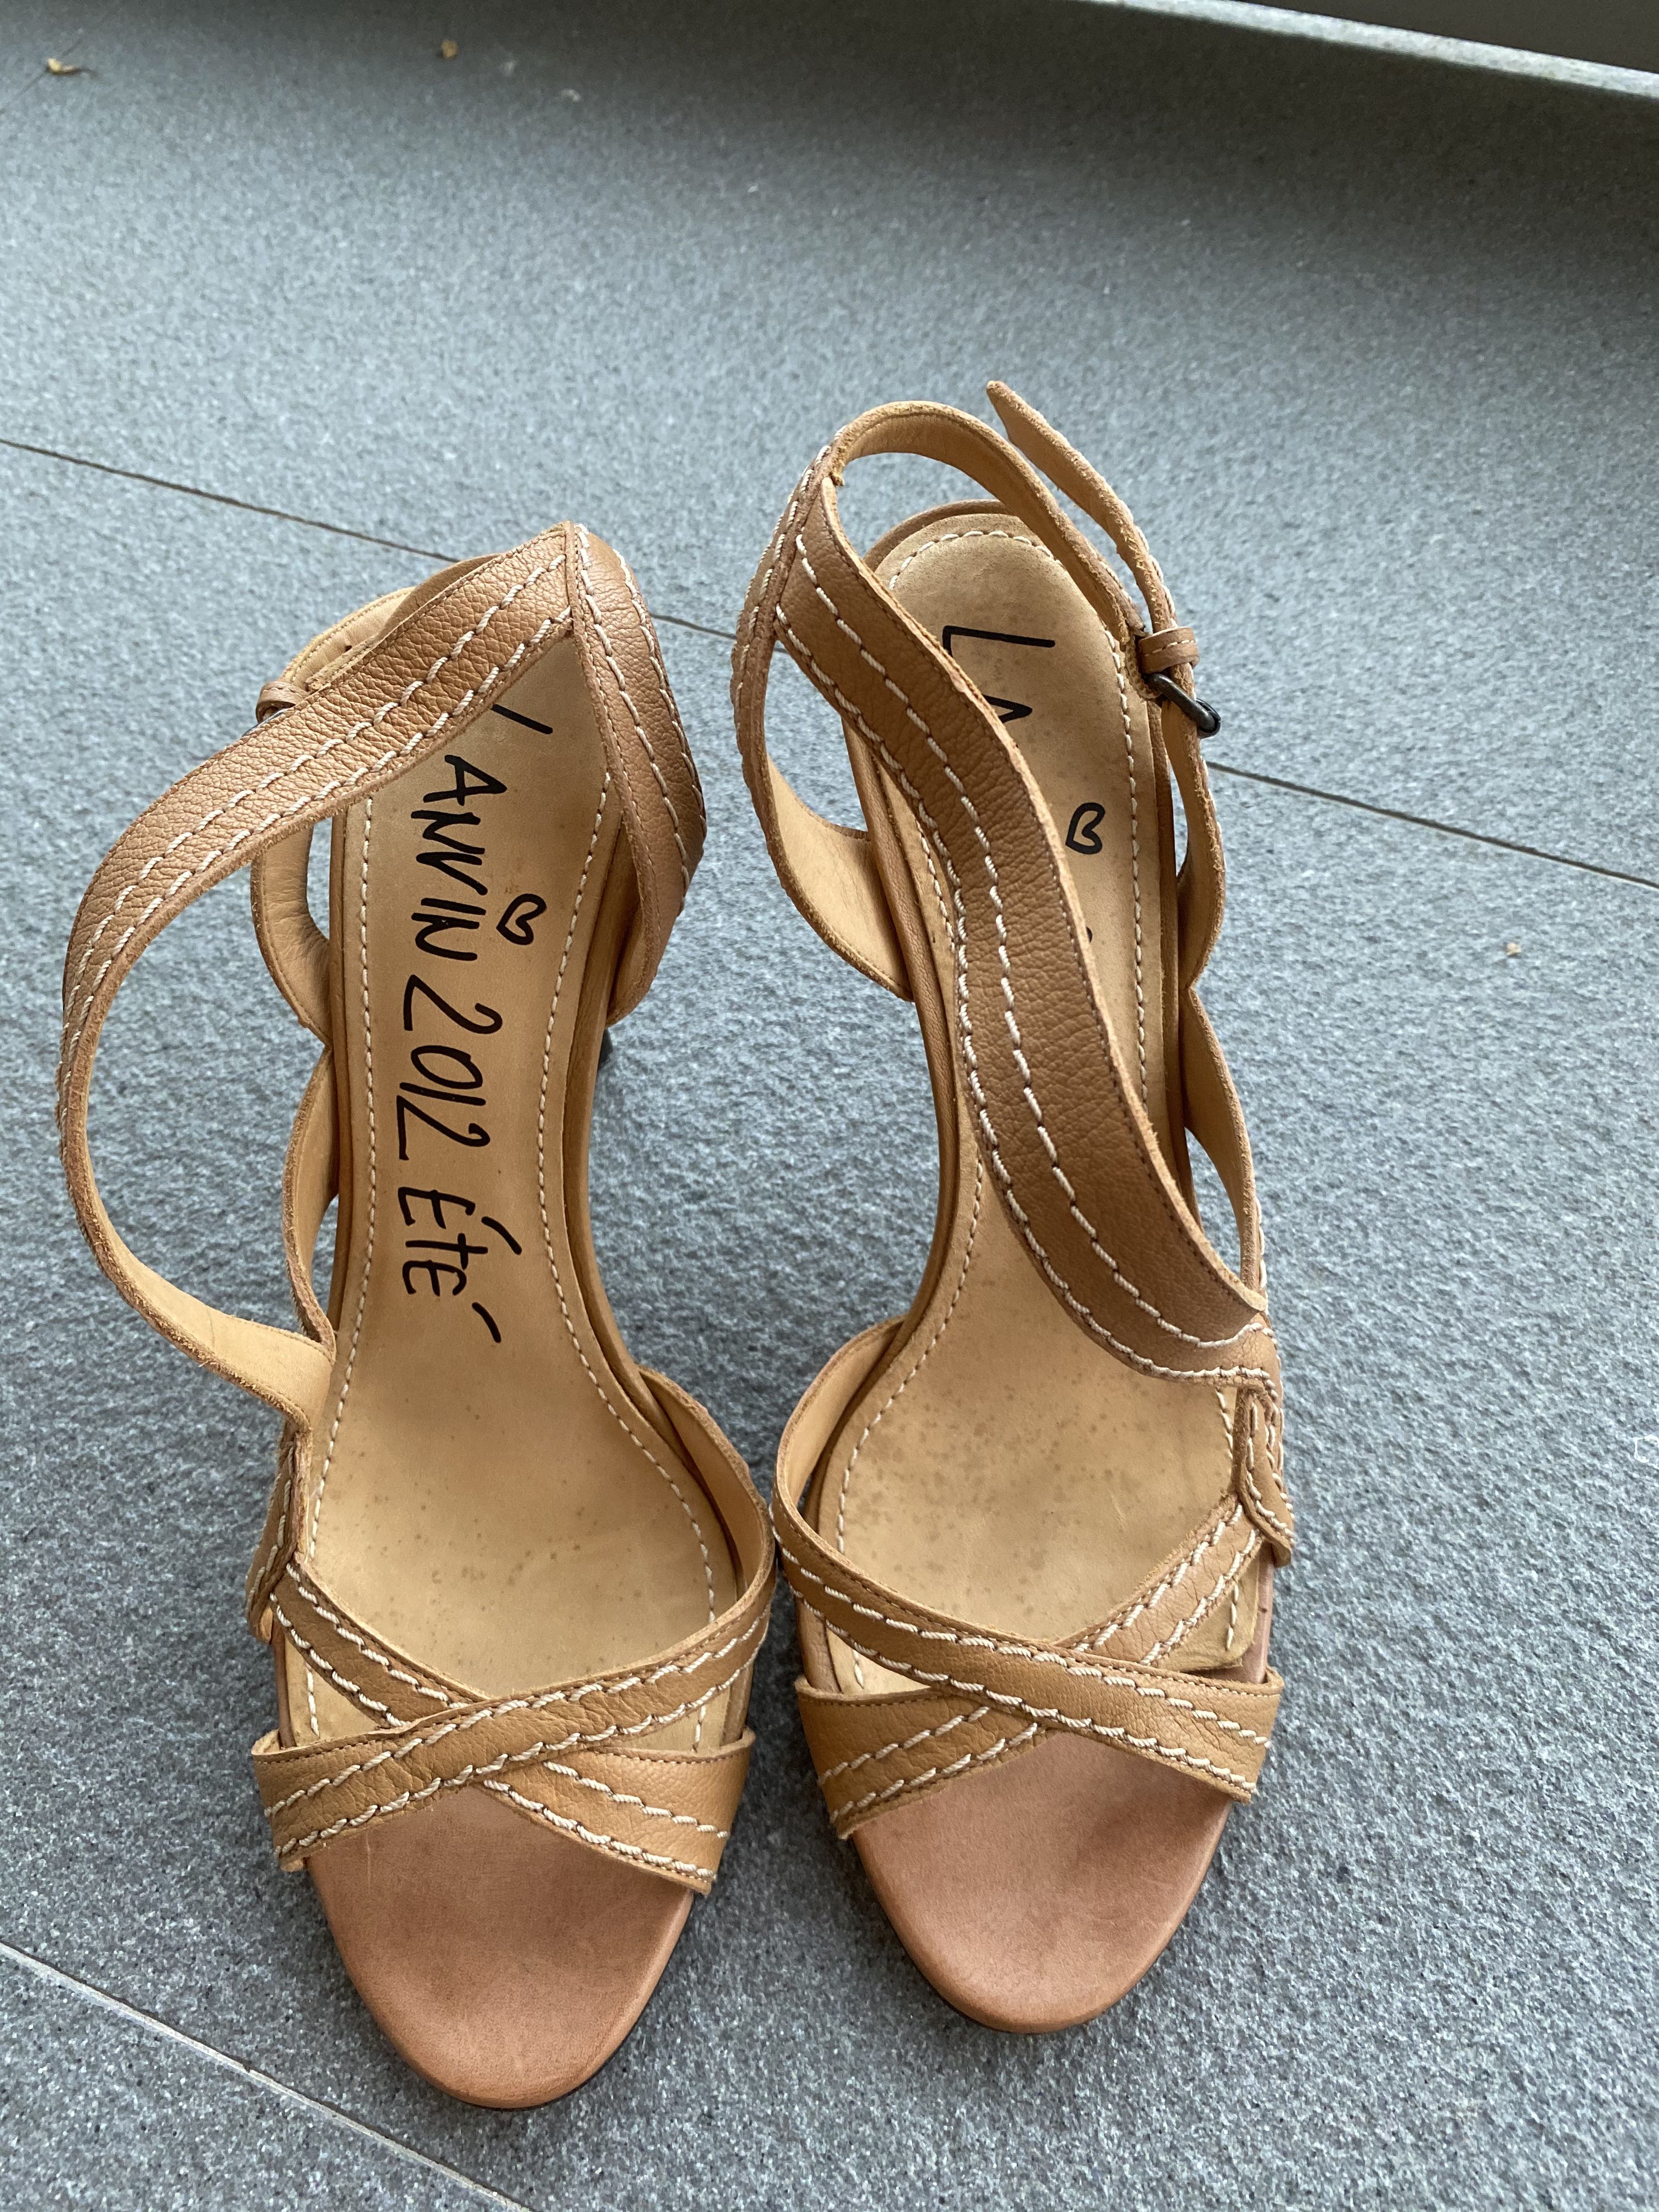 Lanvin tan strappy heels - size EU38 